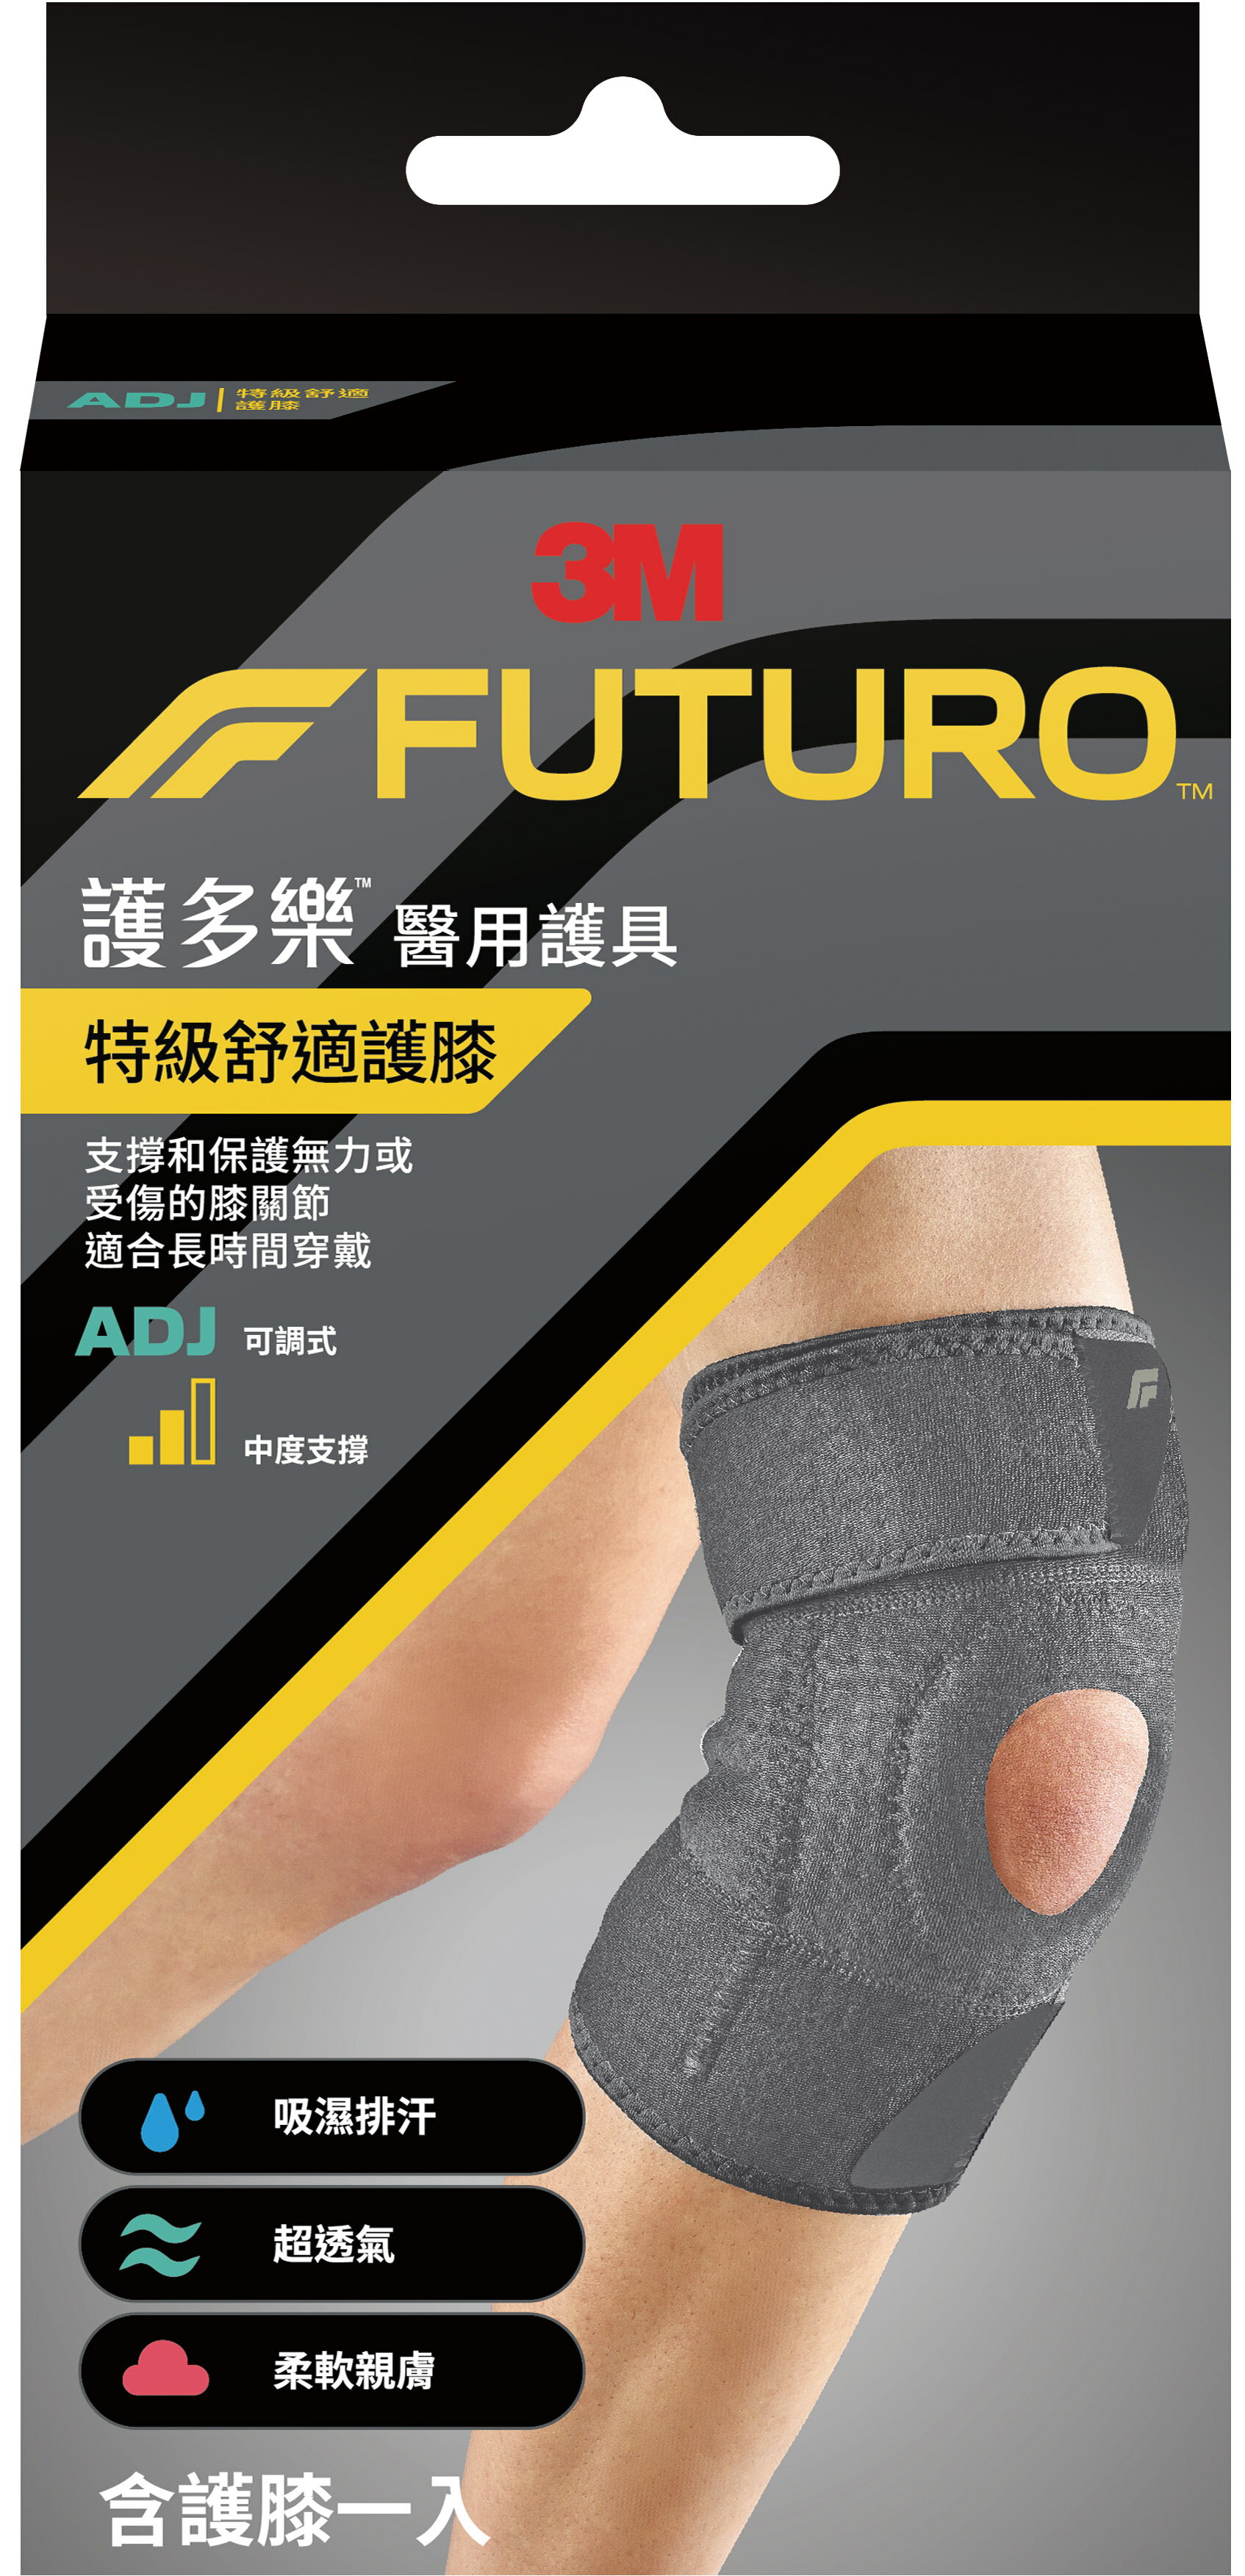 【醫護寶】3M-FUTURO 護多樂 特級舒適護膝 適合長時間穿戴 醫用護具